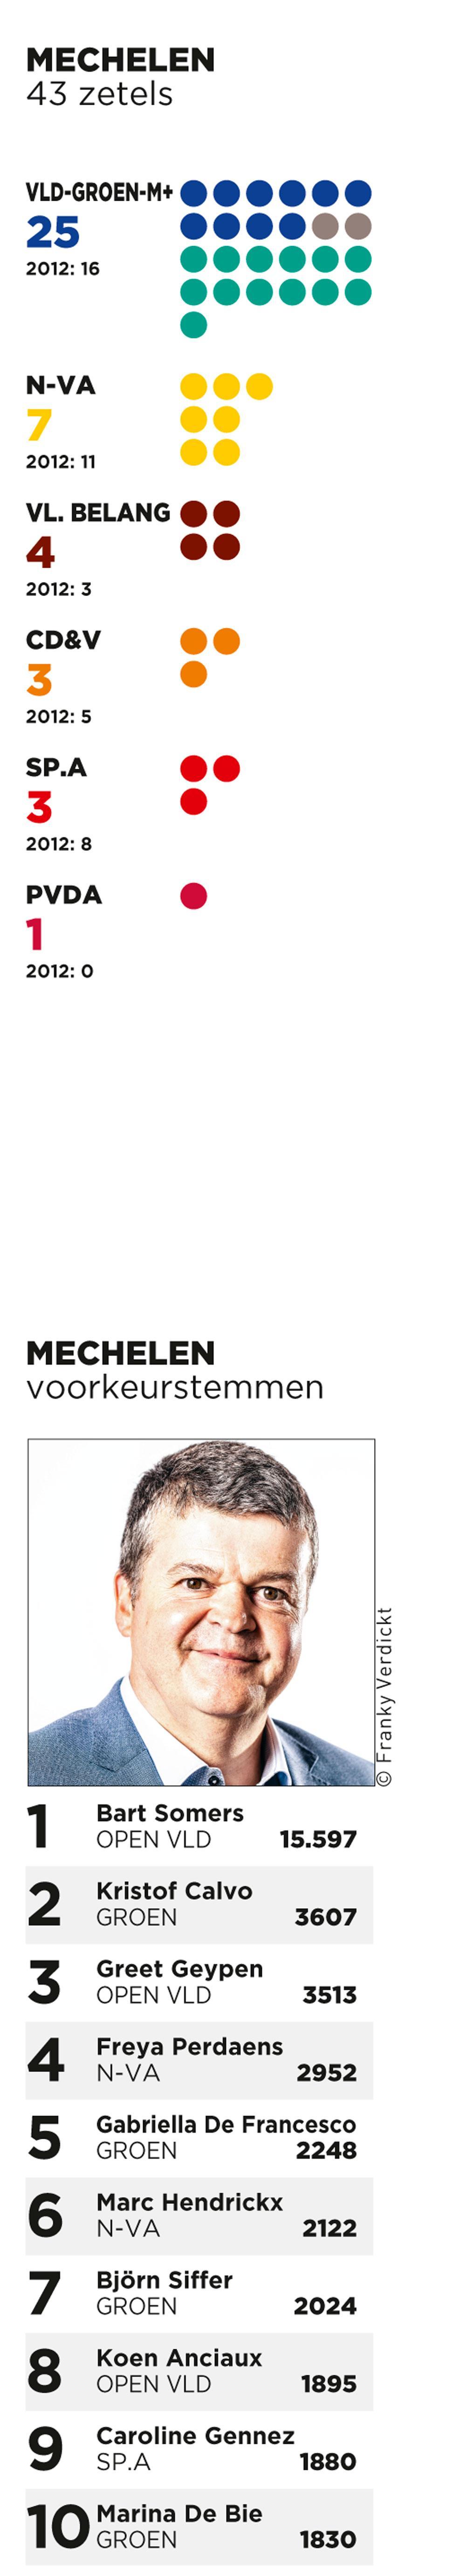 'Concurrentie in Mechelen viel niet meteen op door vlijt'